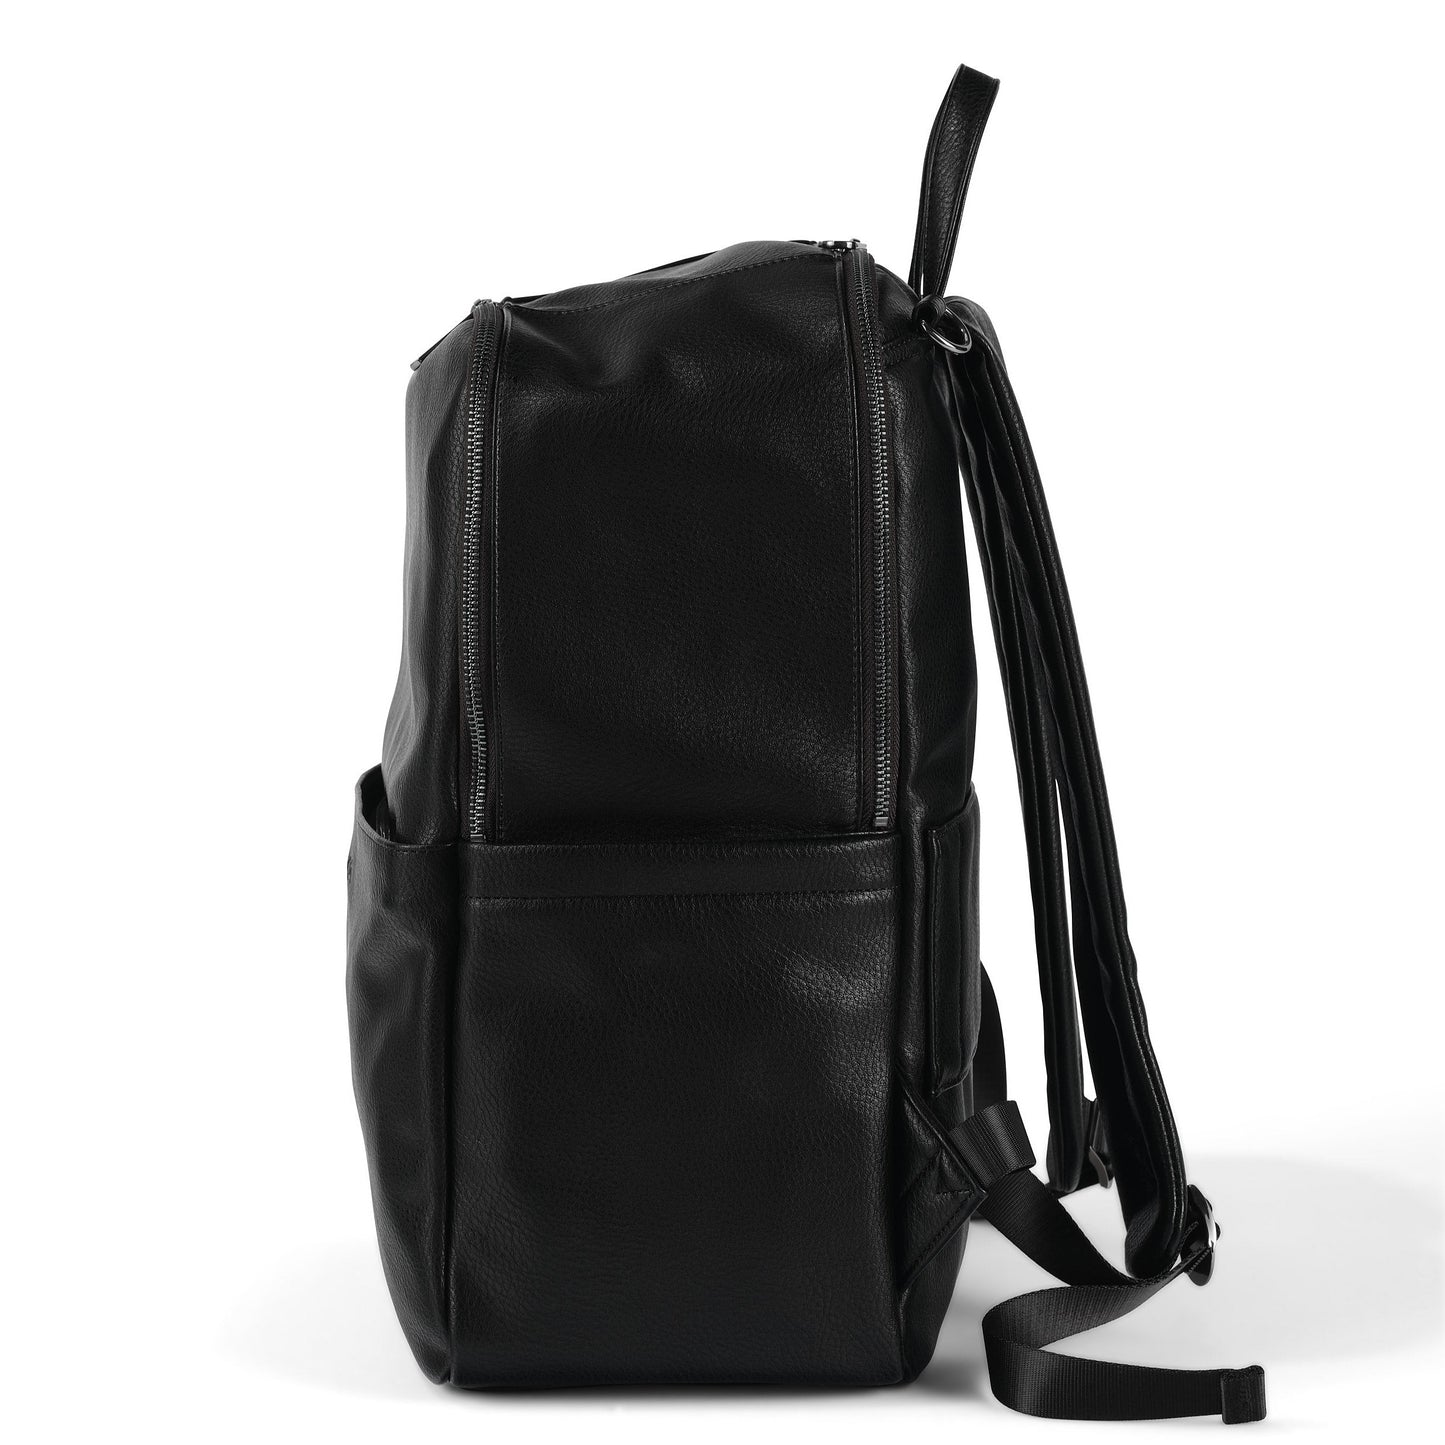 Multitasker Diaper Backpack - Black Faux Leather